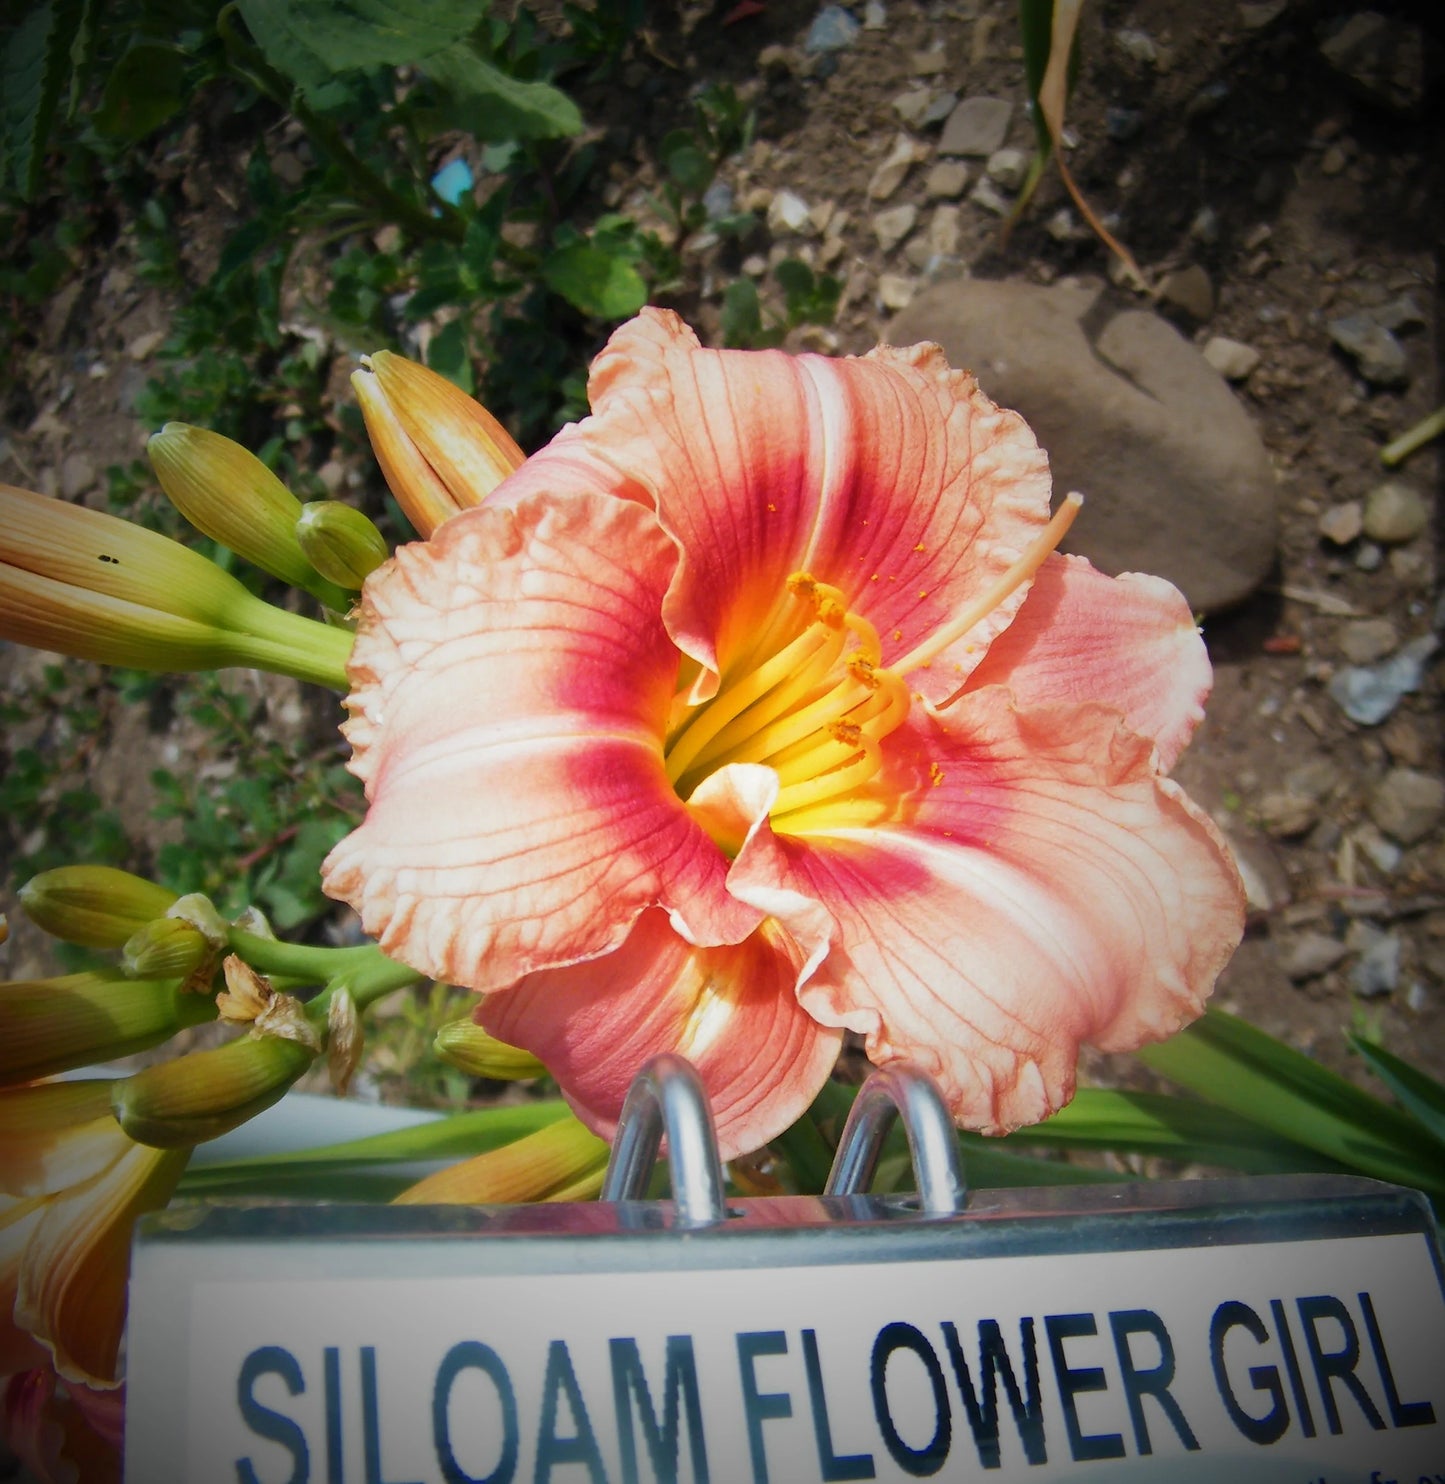 SILOAM FLOWER GIRL